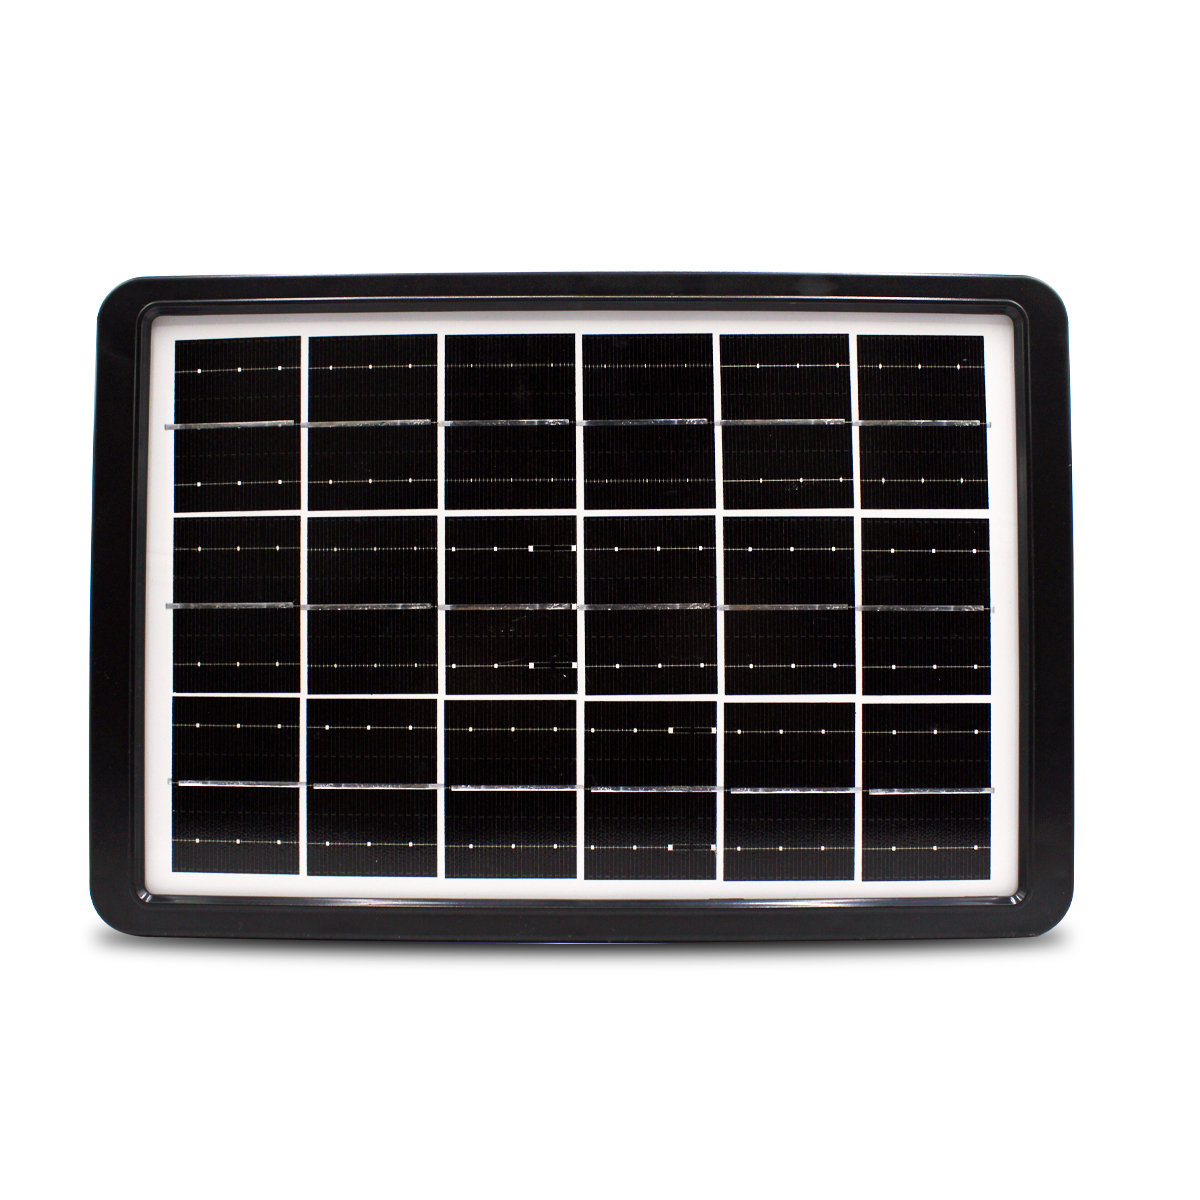 MOREKA Panel Solar 8W Portátil Mini Cargador de Panel Solar USB